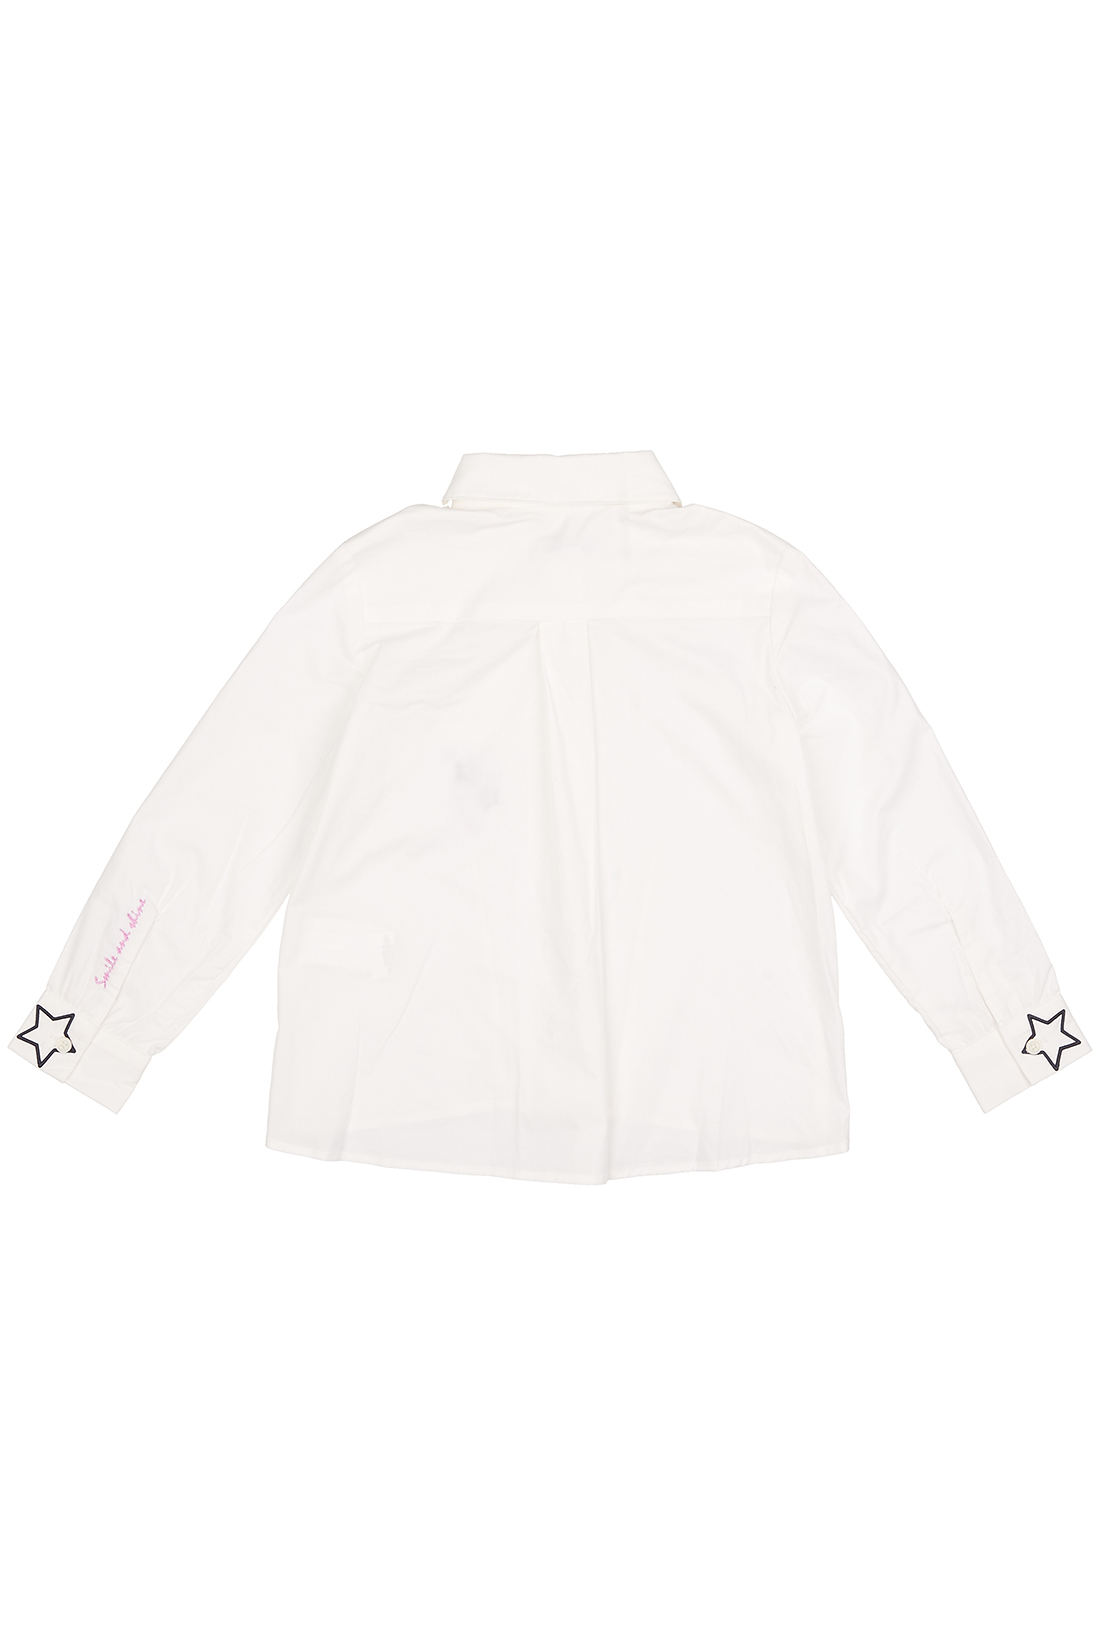 Блузка для девочки (арт. baon BK179502), размер 116, цвет белый Блузка для девочки (арт. baon BK179502) - фото 2